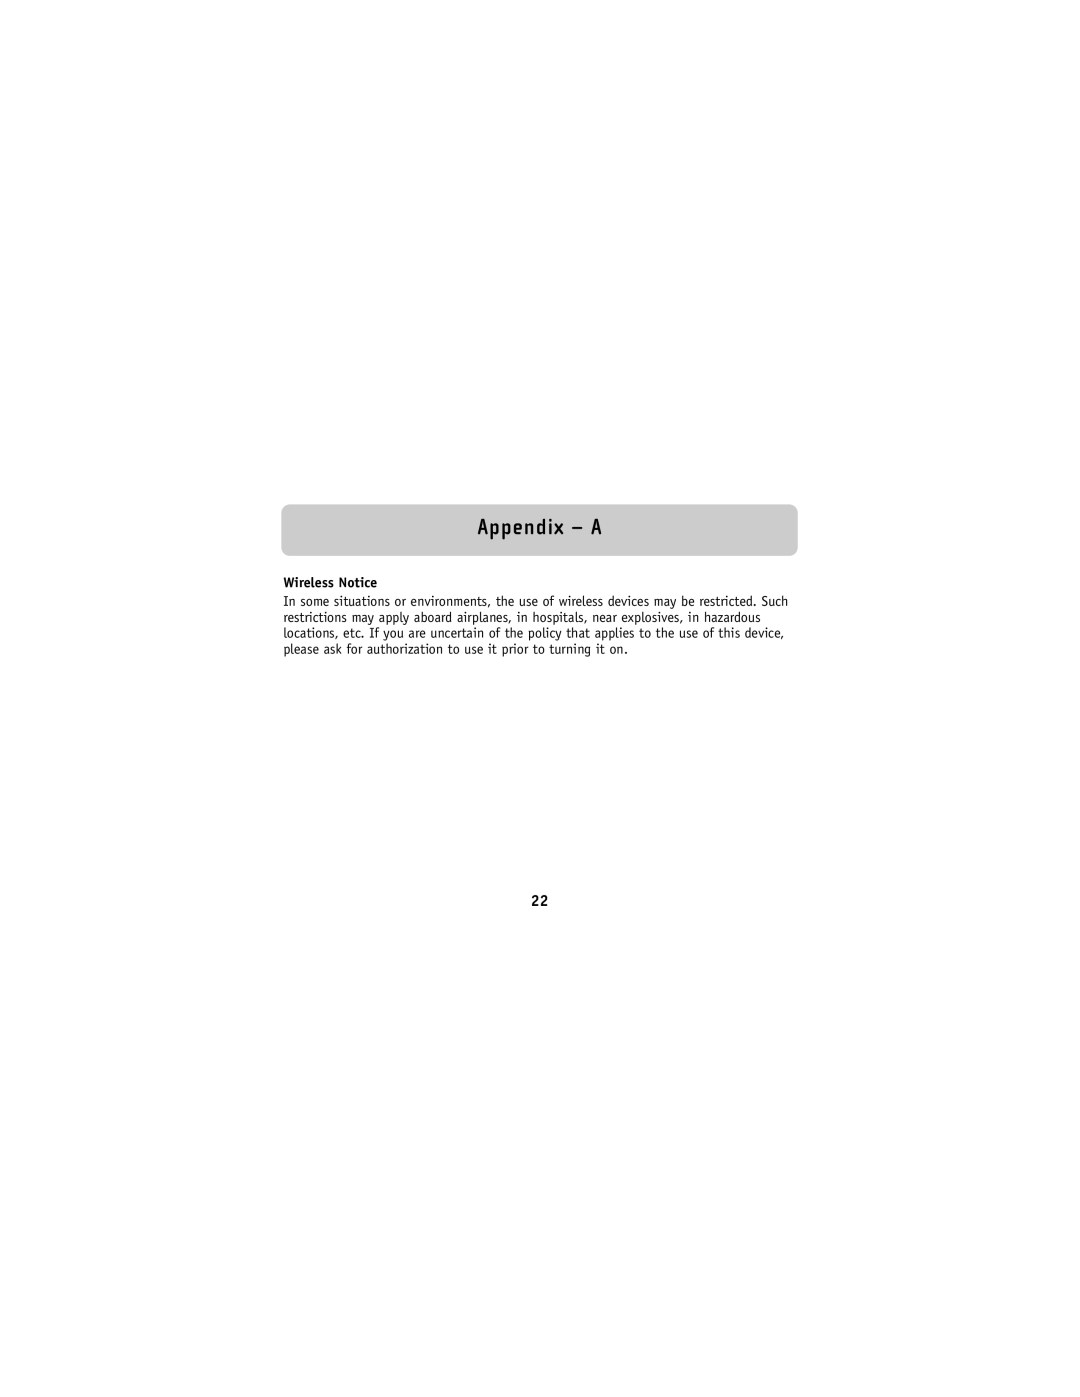 Belkin F8V9017 user manual Wireless Notice, Appendix - A 